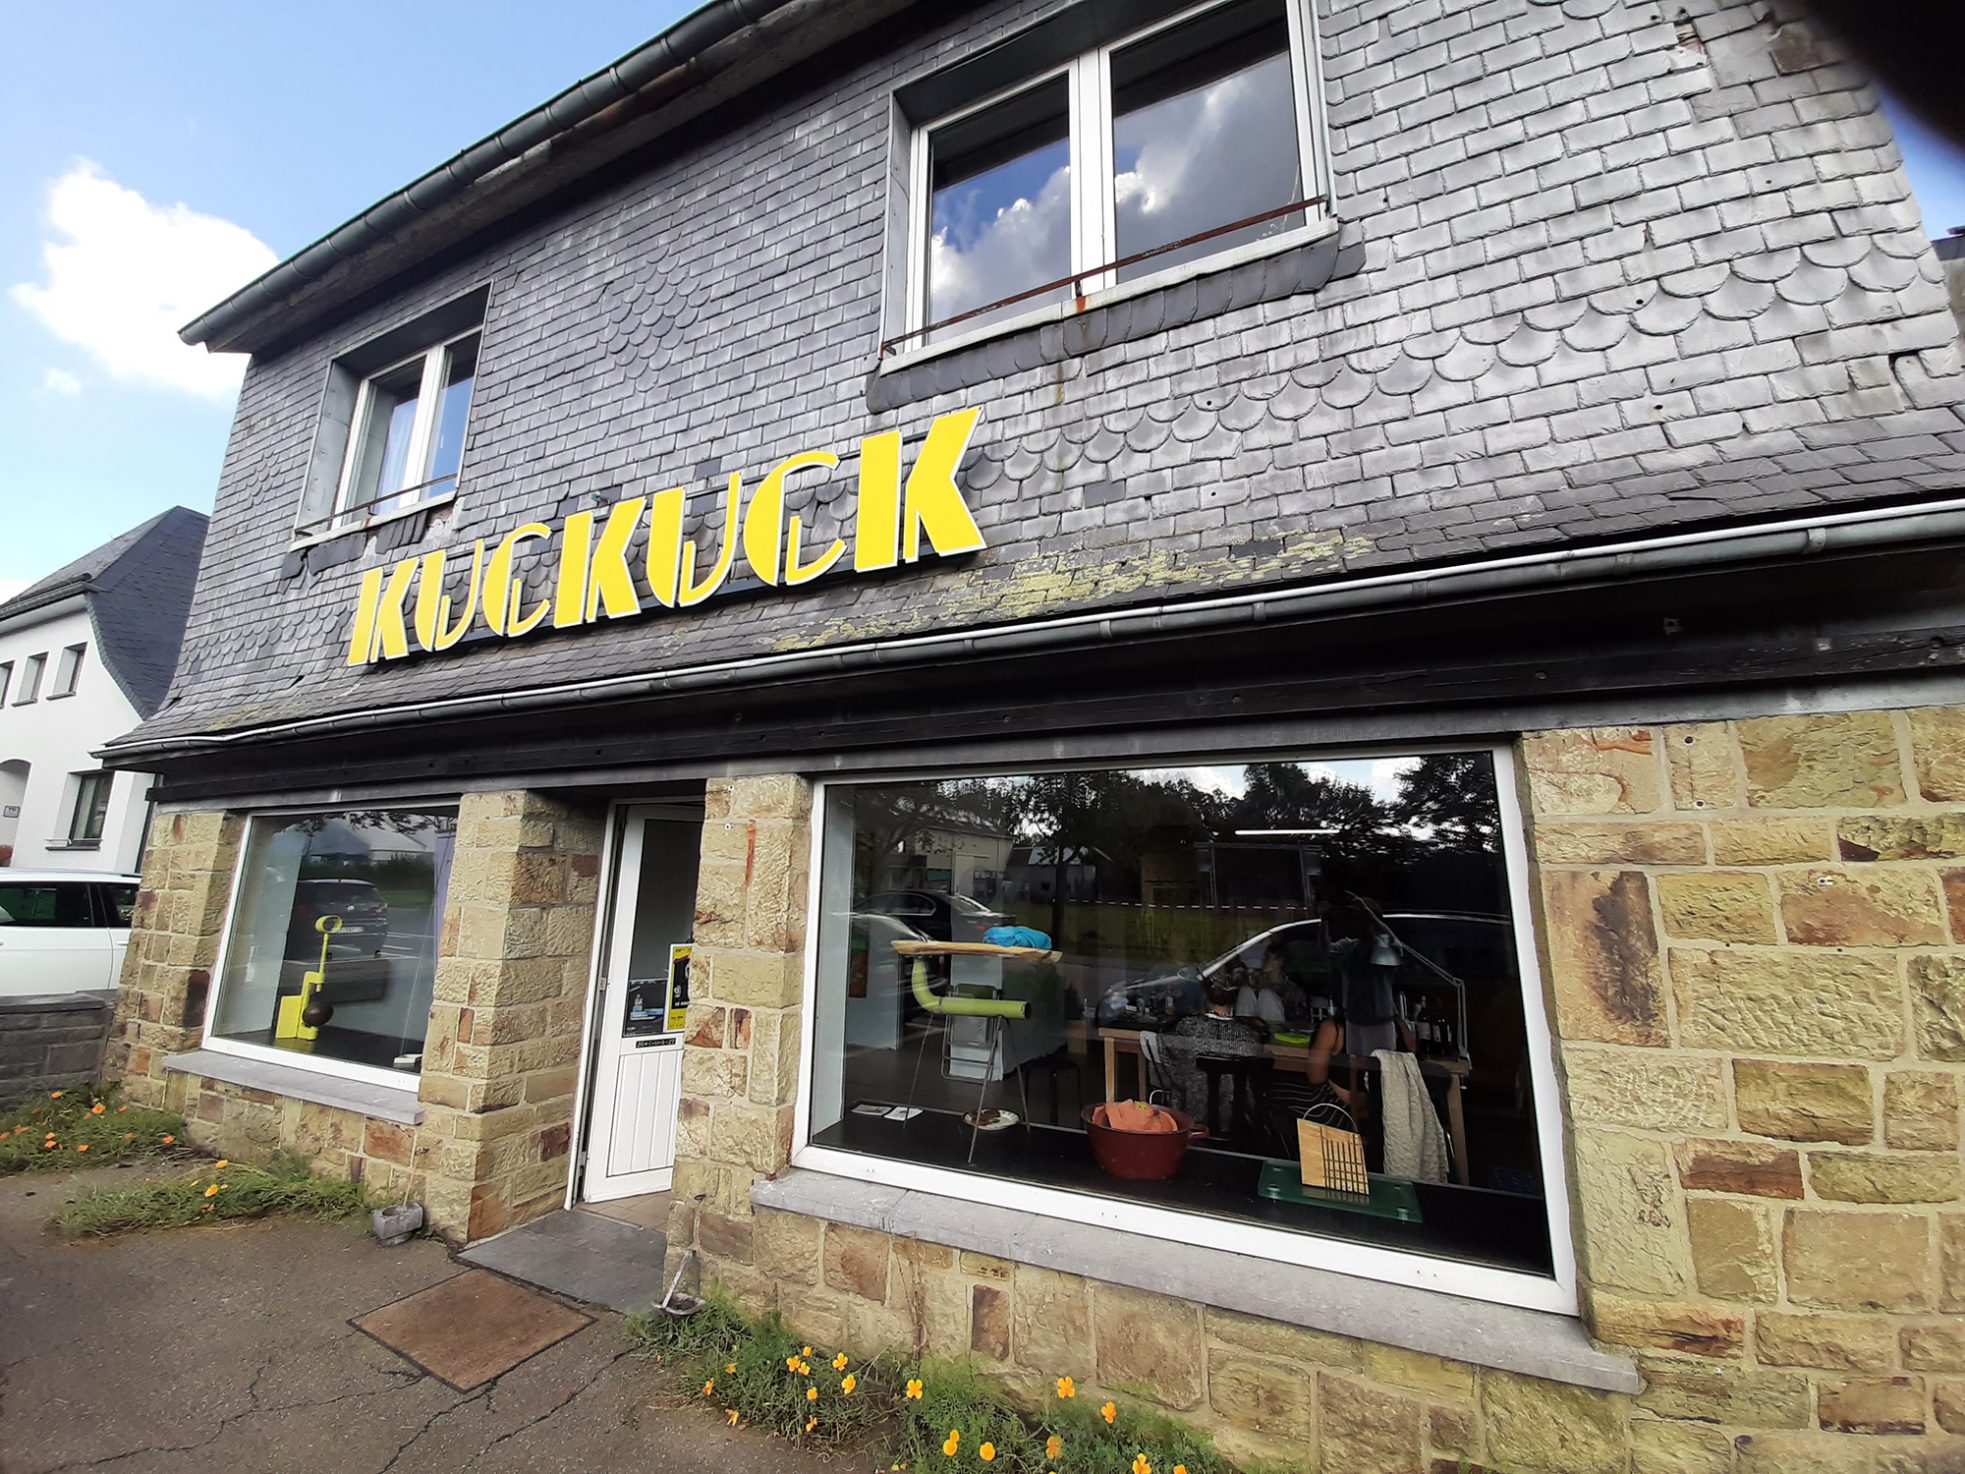 "Kuckuck" in St. Vith wieder eröffnet